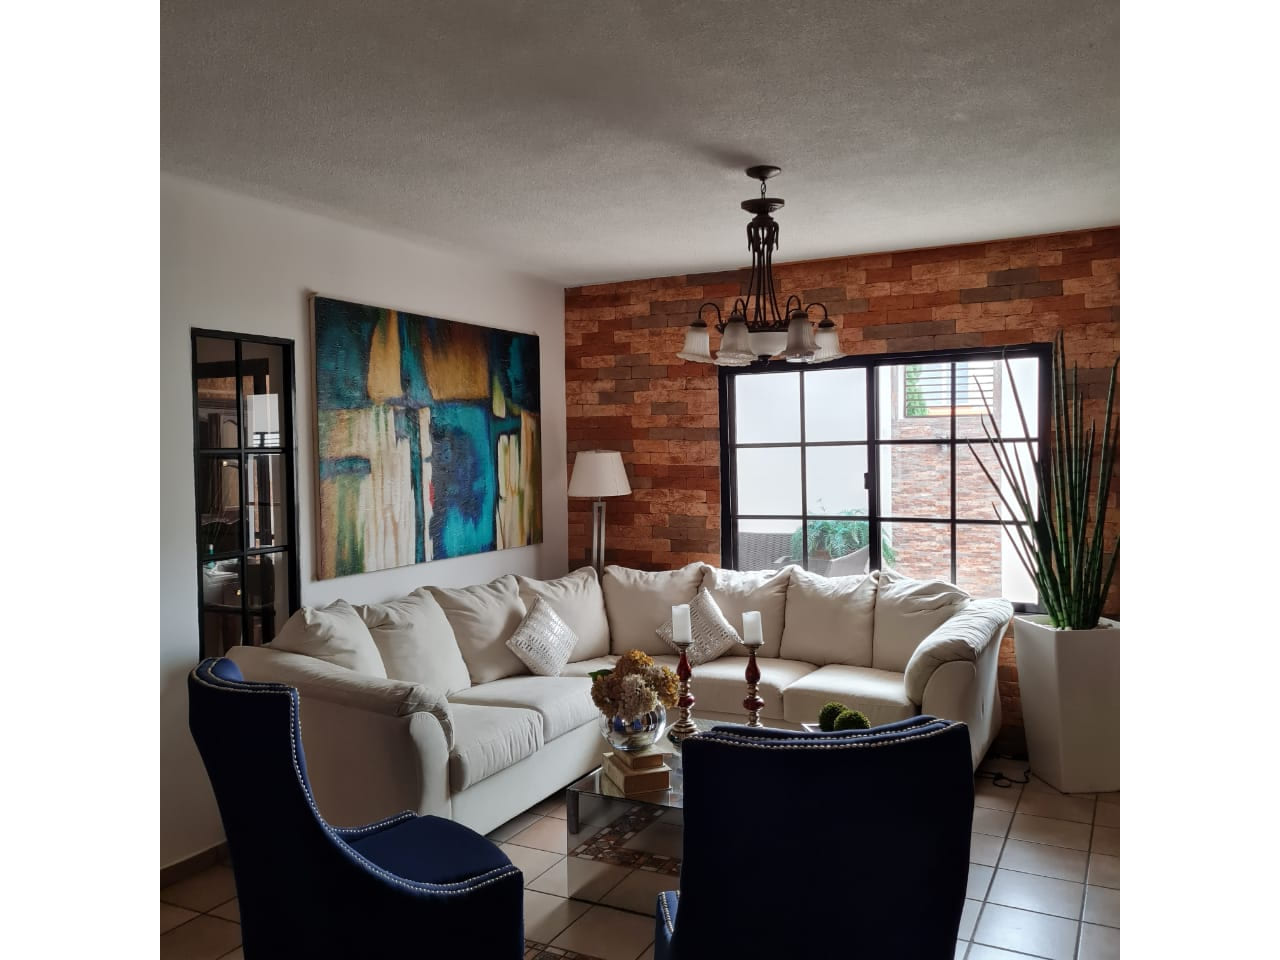 Sala de estar con muebles de color blanco, una lampara grande colgante, un cuadro grante detras junto a una puerta corrediza con acceso al patio.